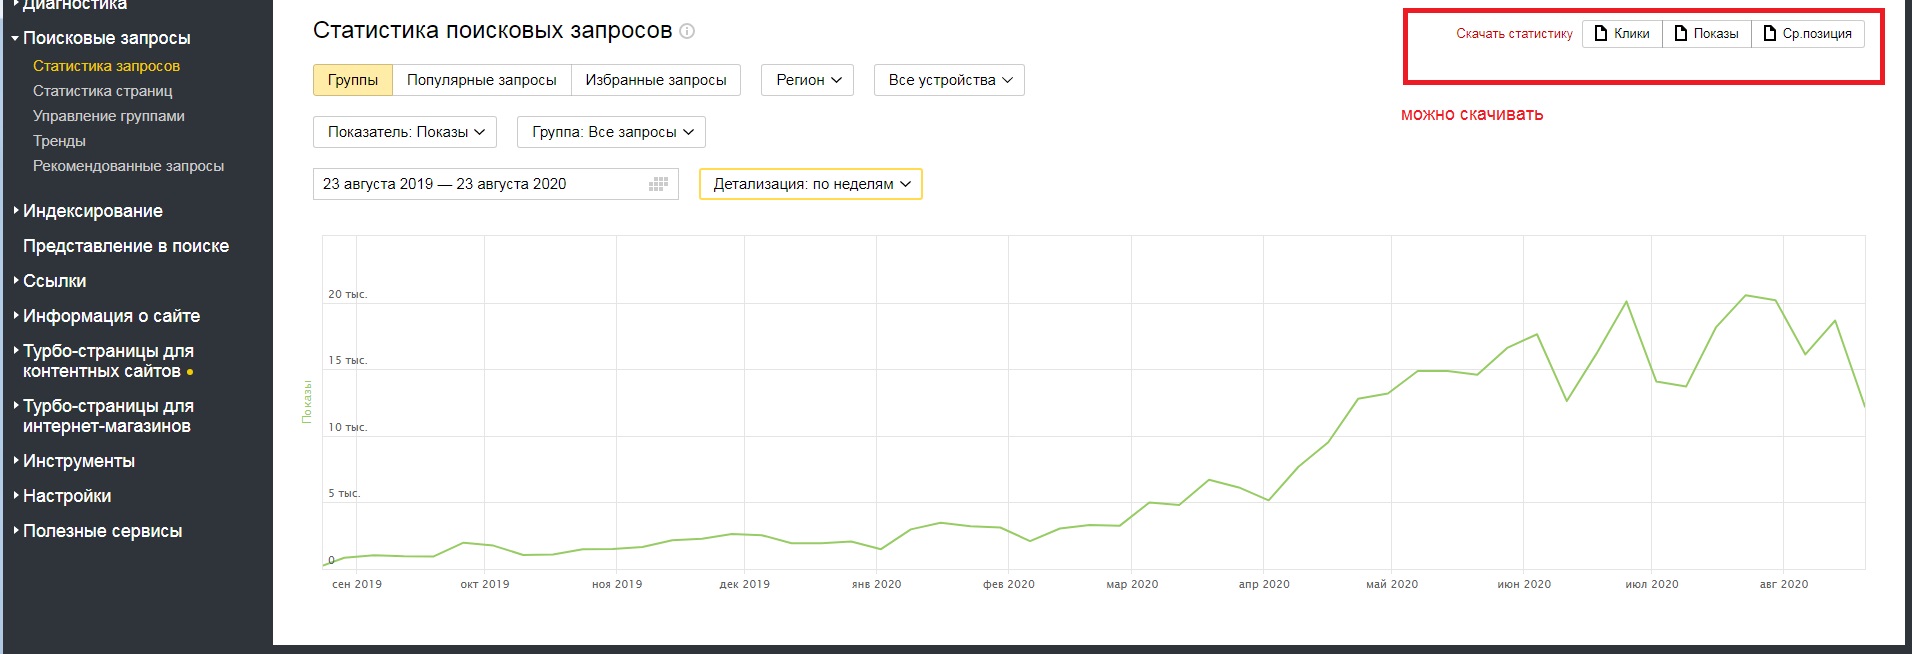 вебмаcтер яндекса для seo, рост показов сайта в Яндексе.jpg